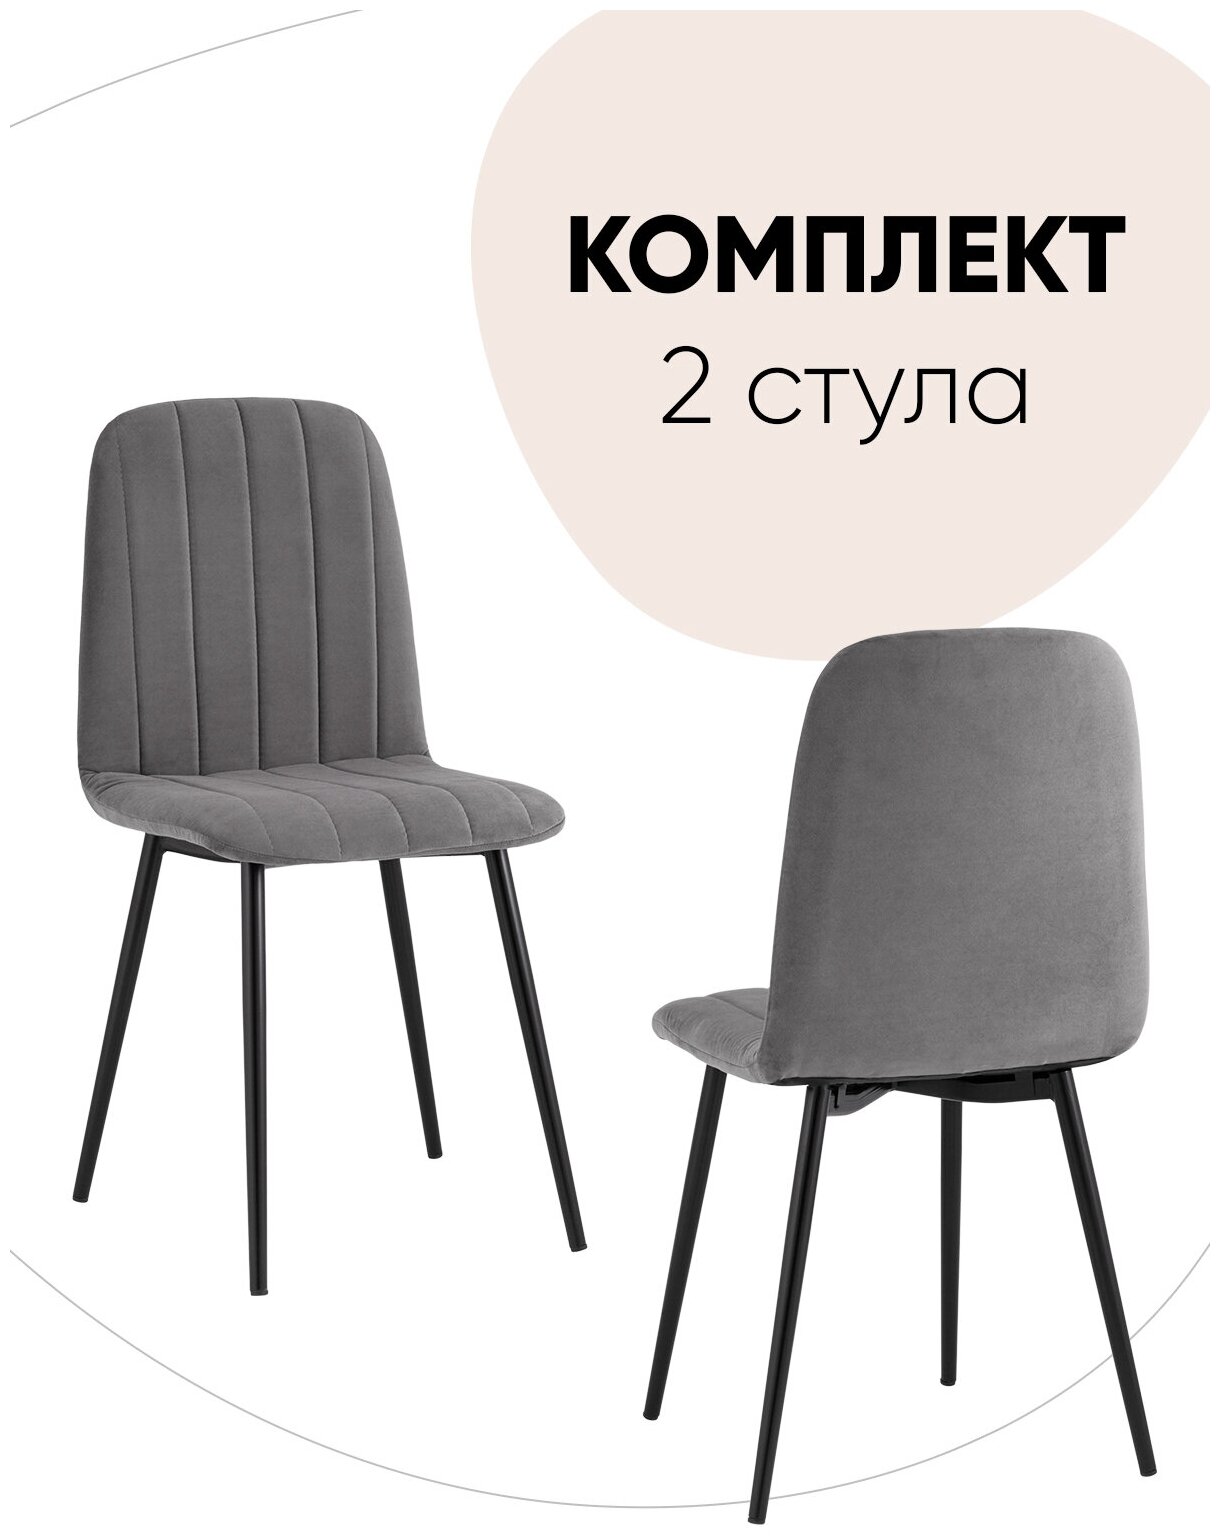 Комплект стульев 2 шт Easy велюр тёмно-серый